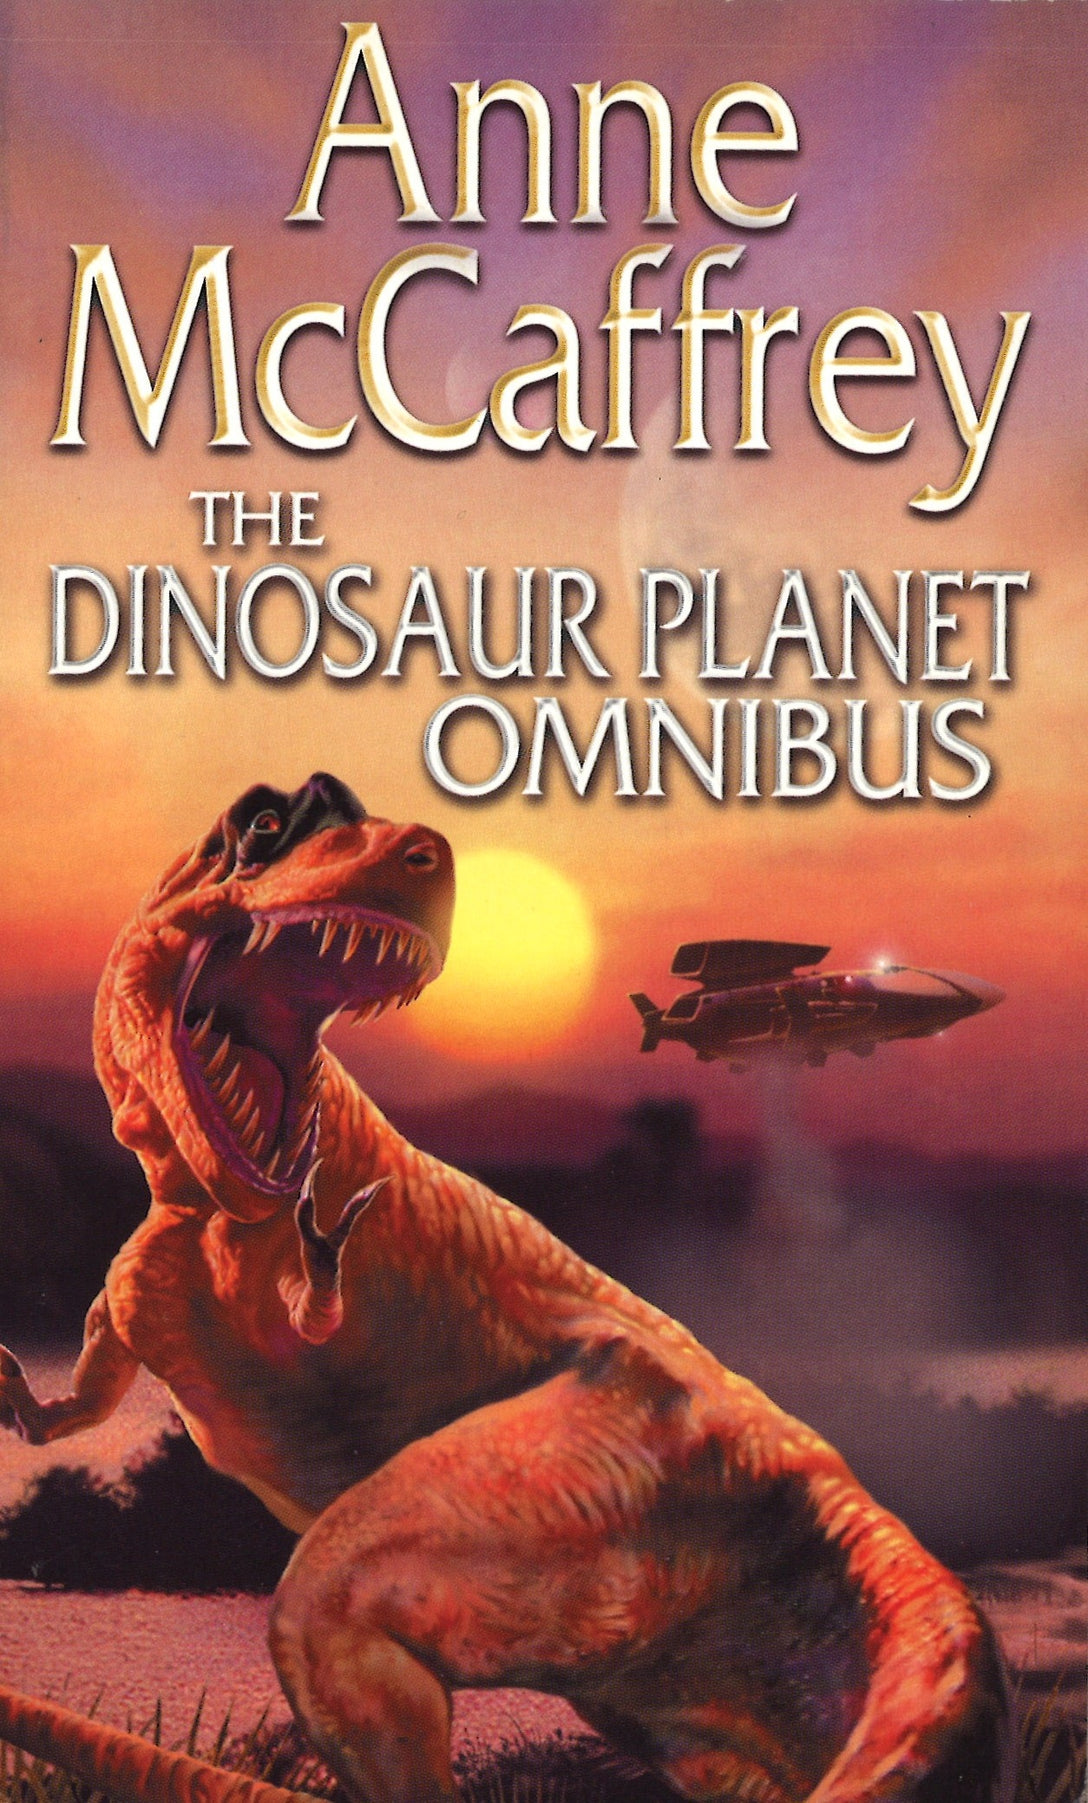 Dinosaur Planet Omnibus by Anne McCaffrey